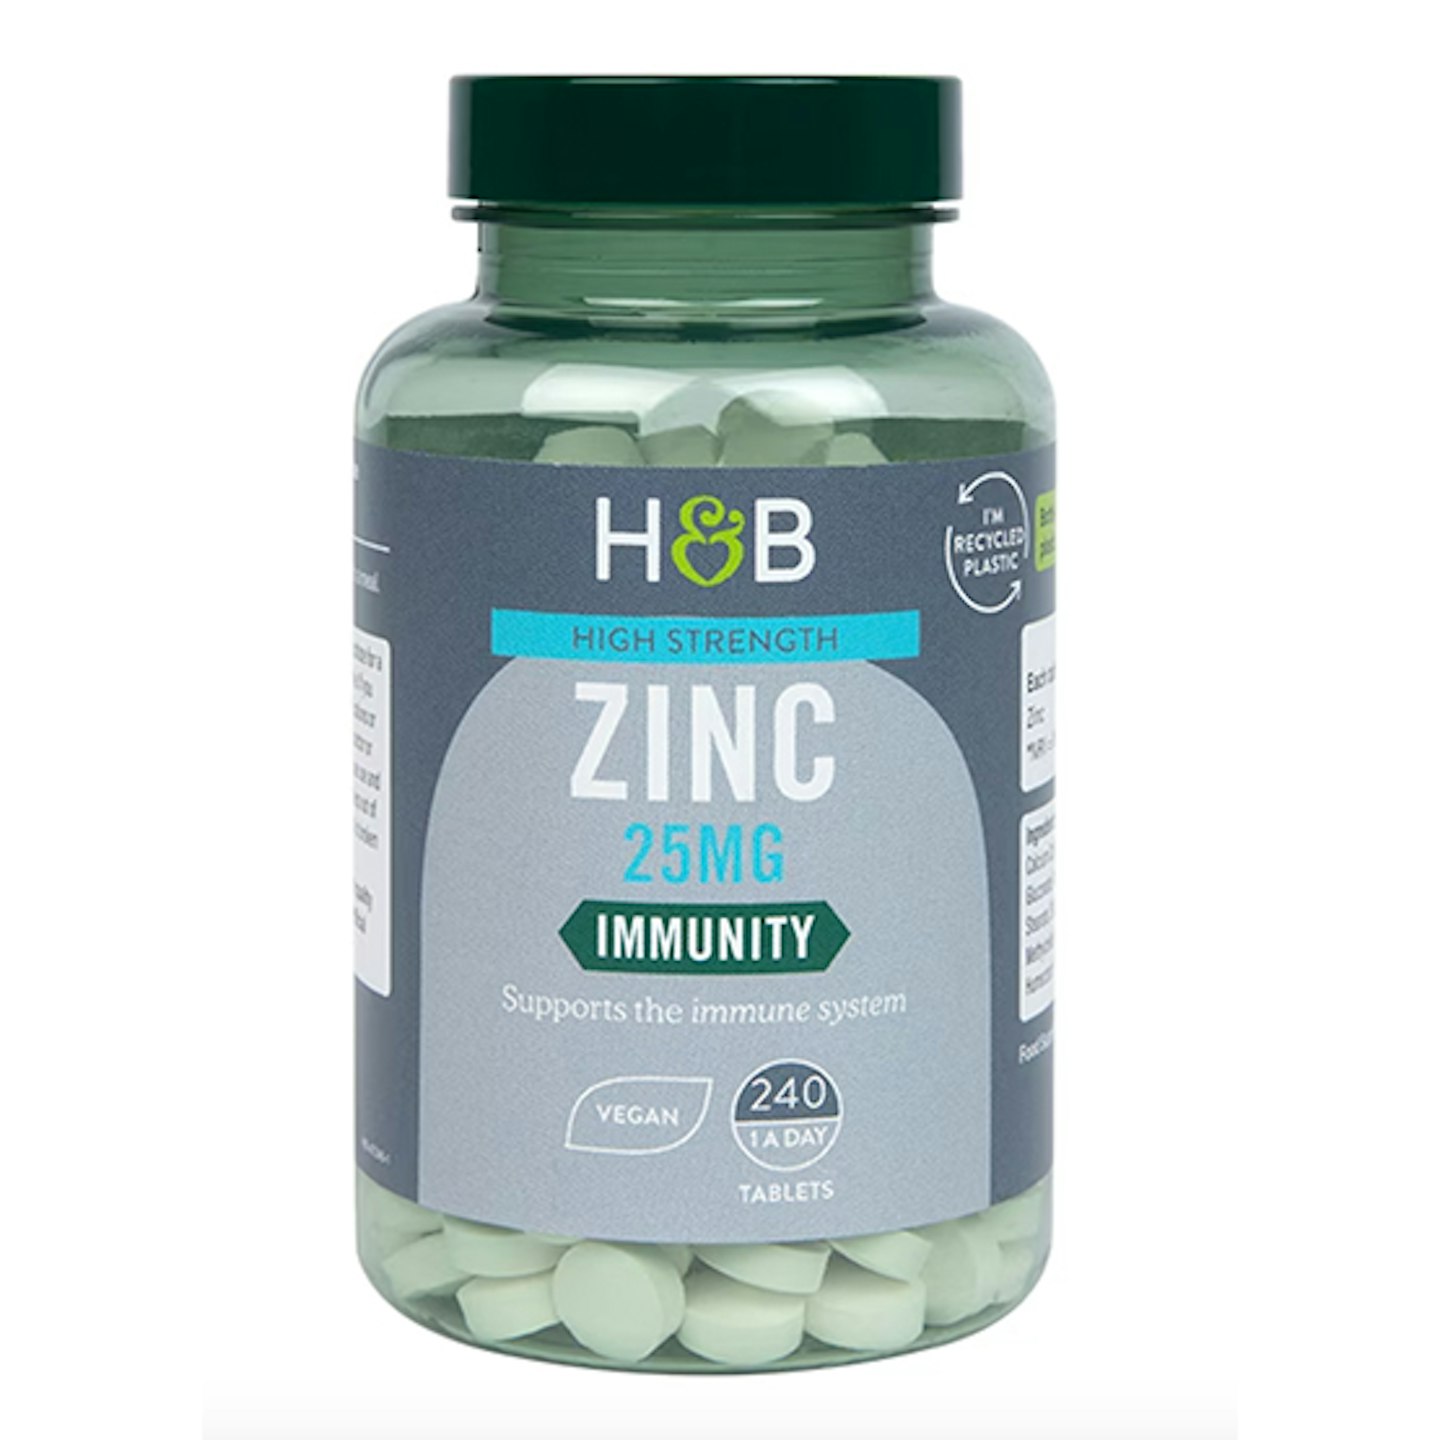 Zinc tablets